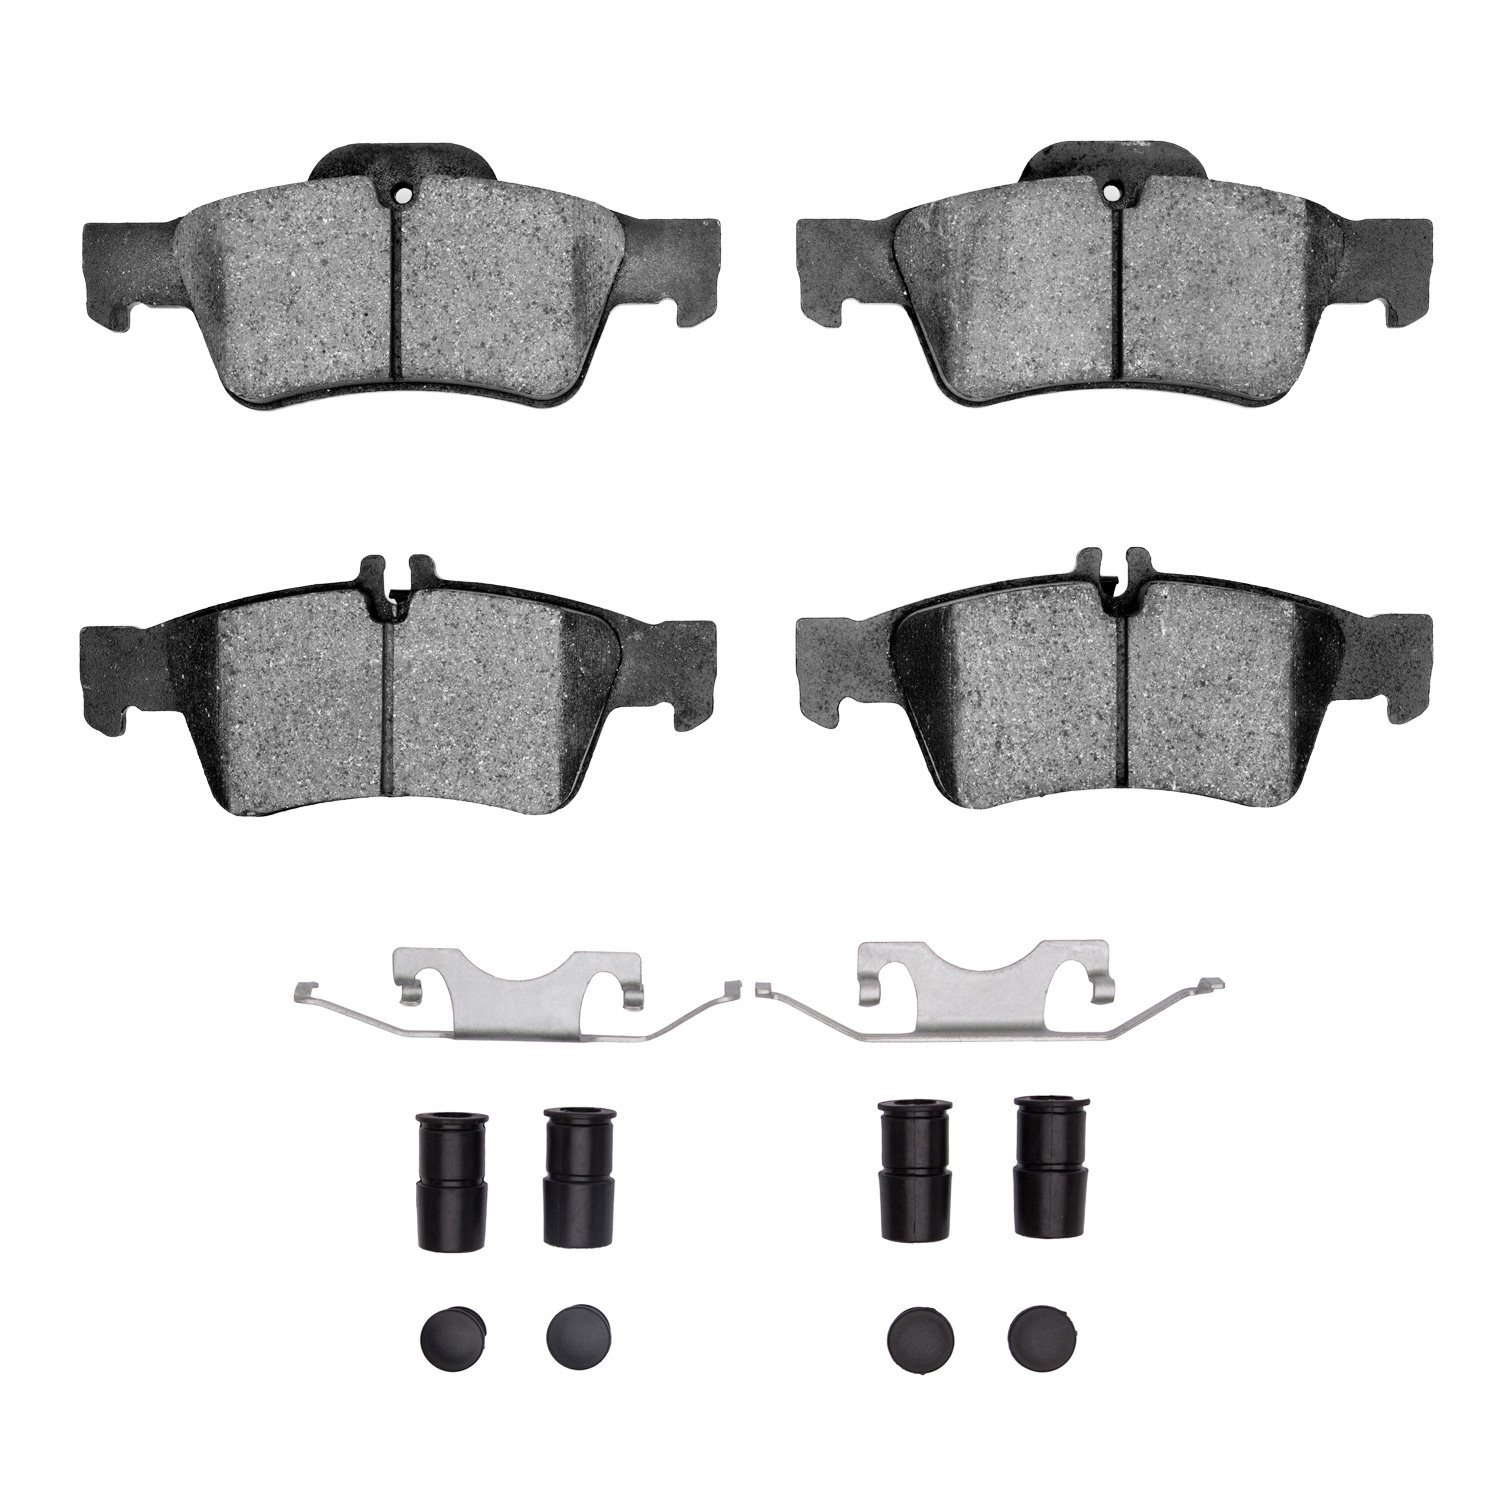 Euro Ceramic Brake Pads & Hardware Kit, 2002-2018 Mercedes-Benz, Position: Rear